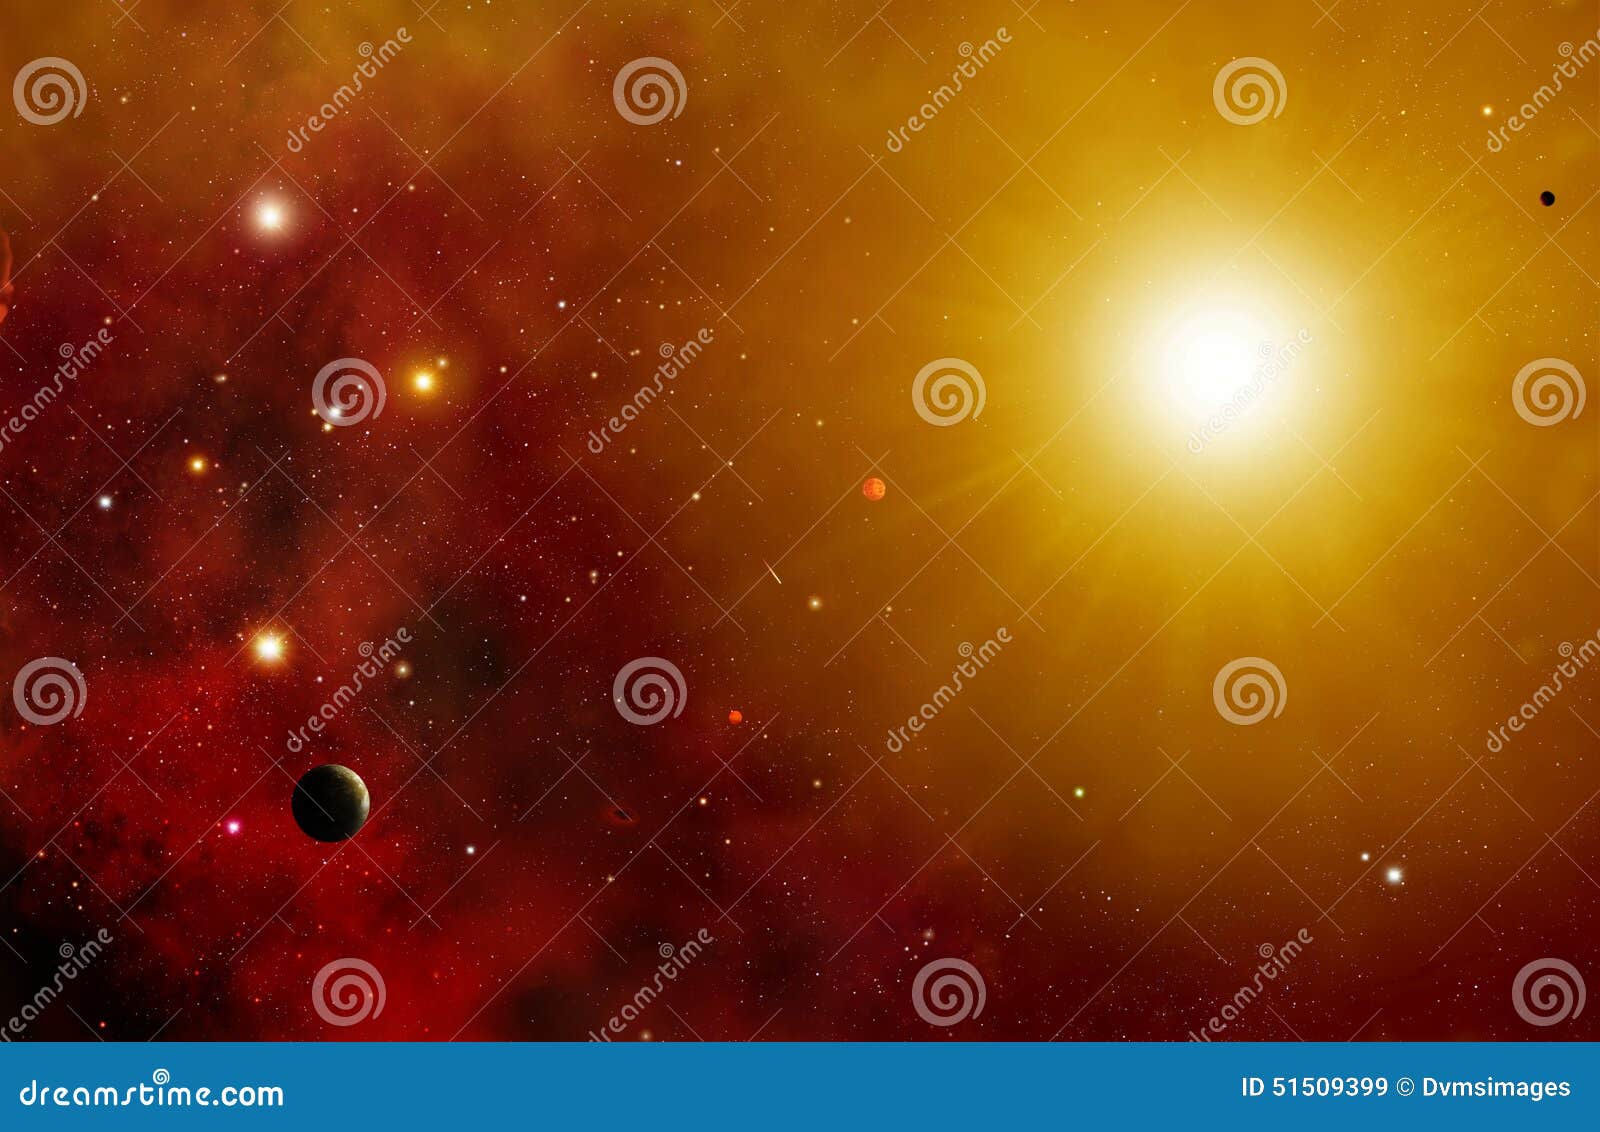 Fond de système d'étoile. Illustration colorée de l'espace composée de vieilles et nouvelles étoiles en nuages des chimères